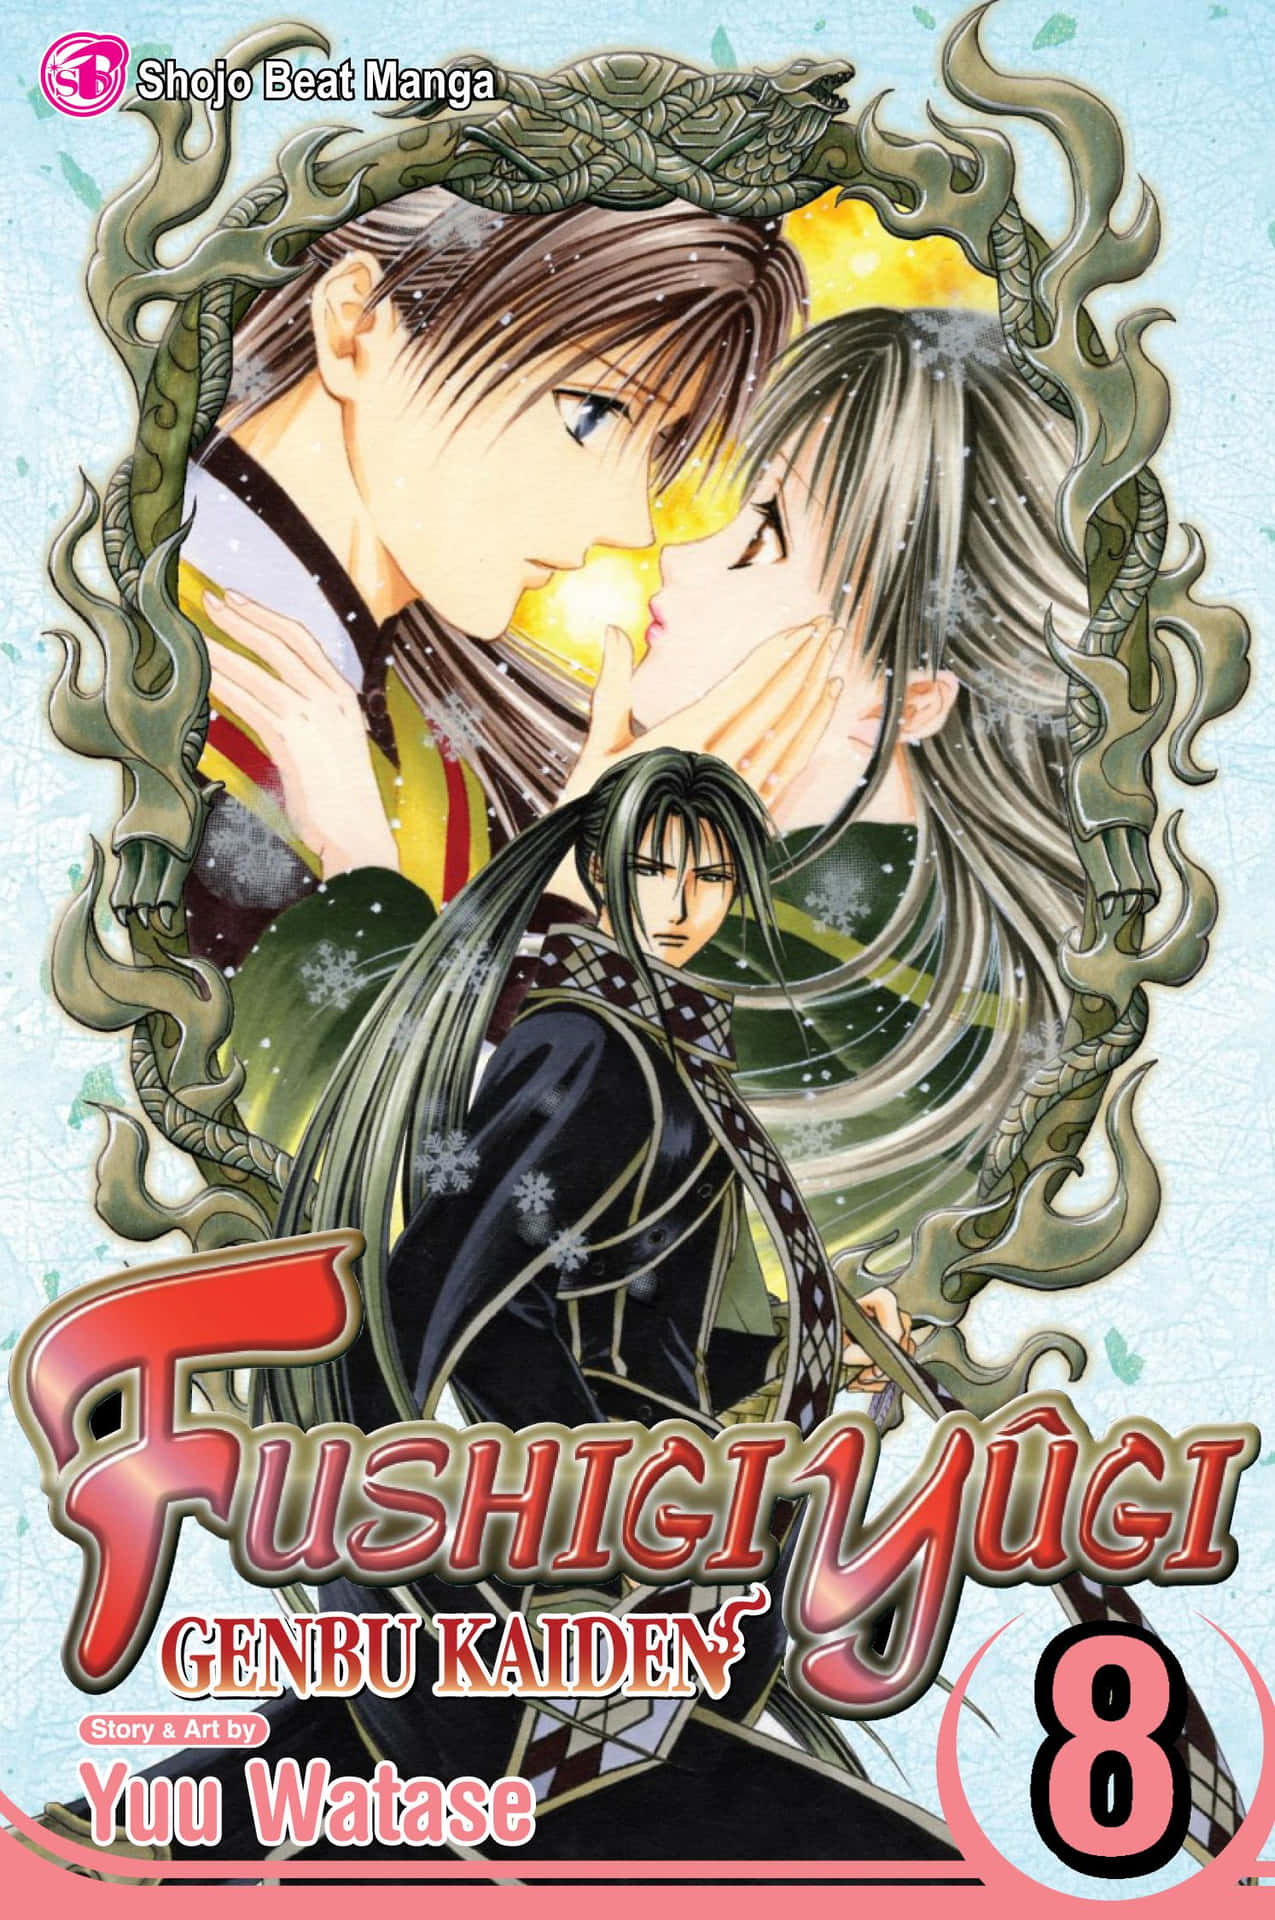 Hermosailustración De Fushigi Yuugi, Un Clásico Anime.